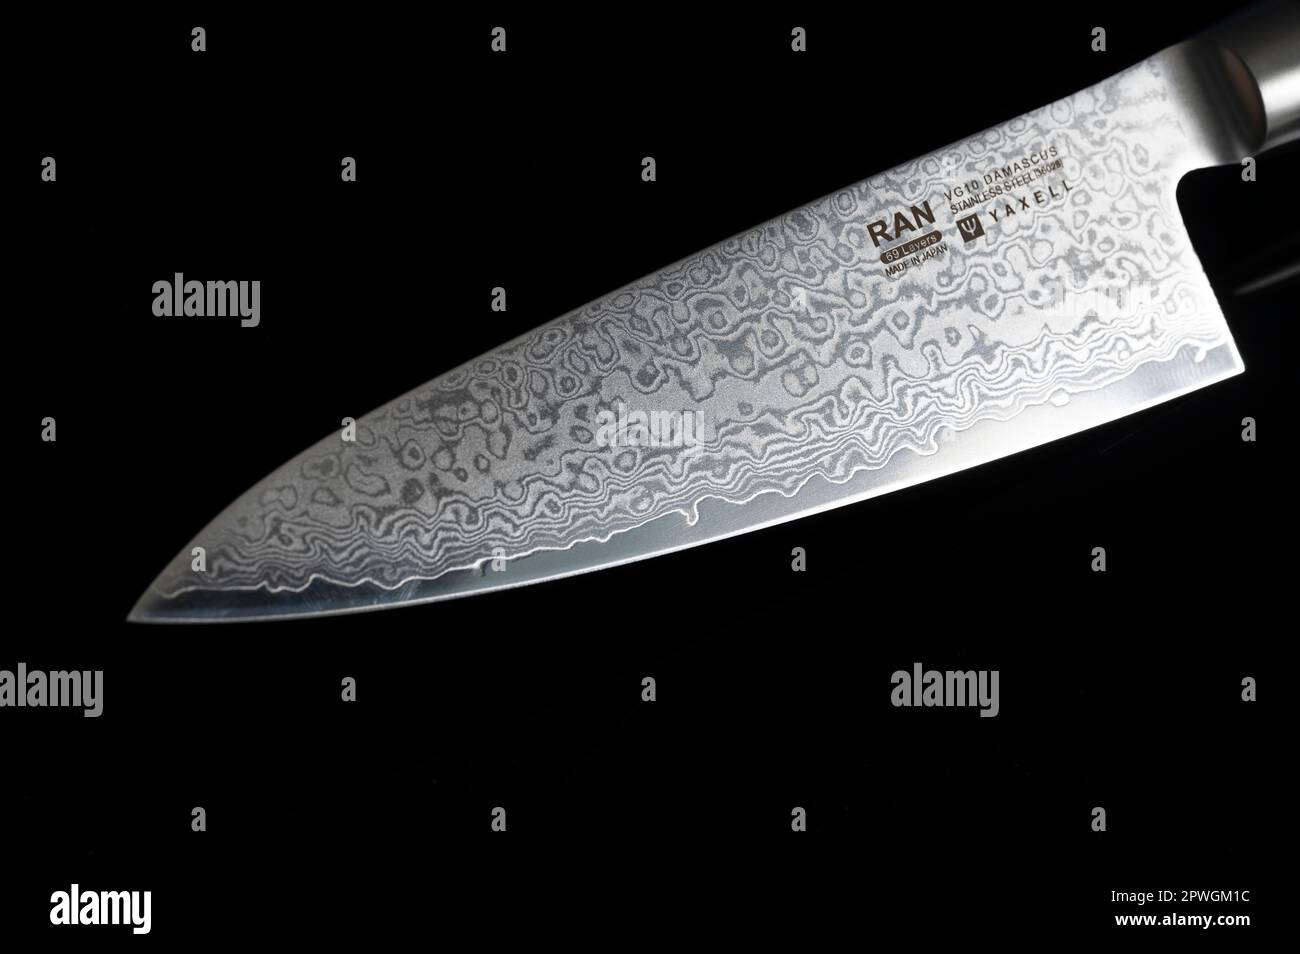 Un tradizionale coltello da chef giapponese di prima qualità prodotto con acciaio damasco ripiegato a strati Foto Stock